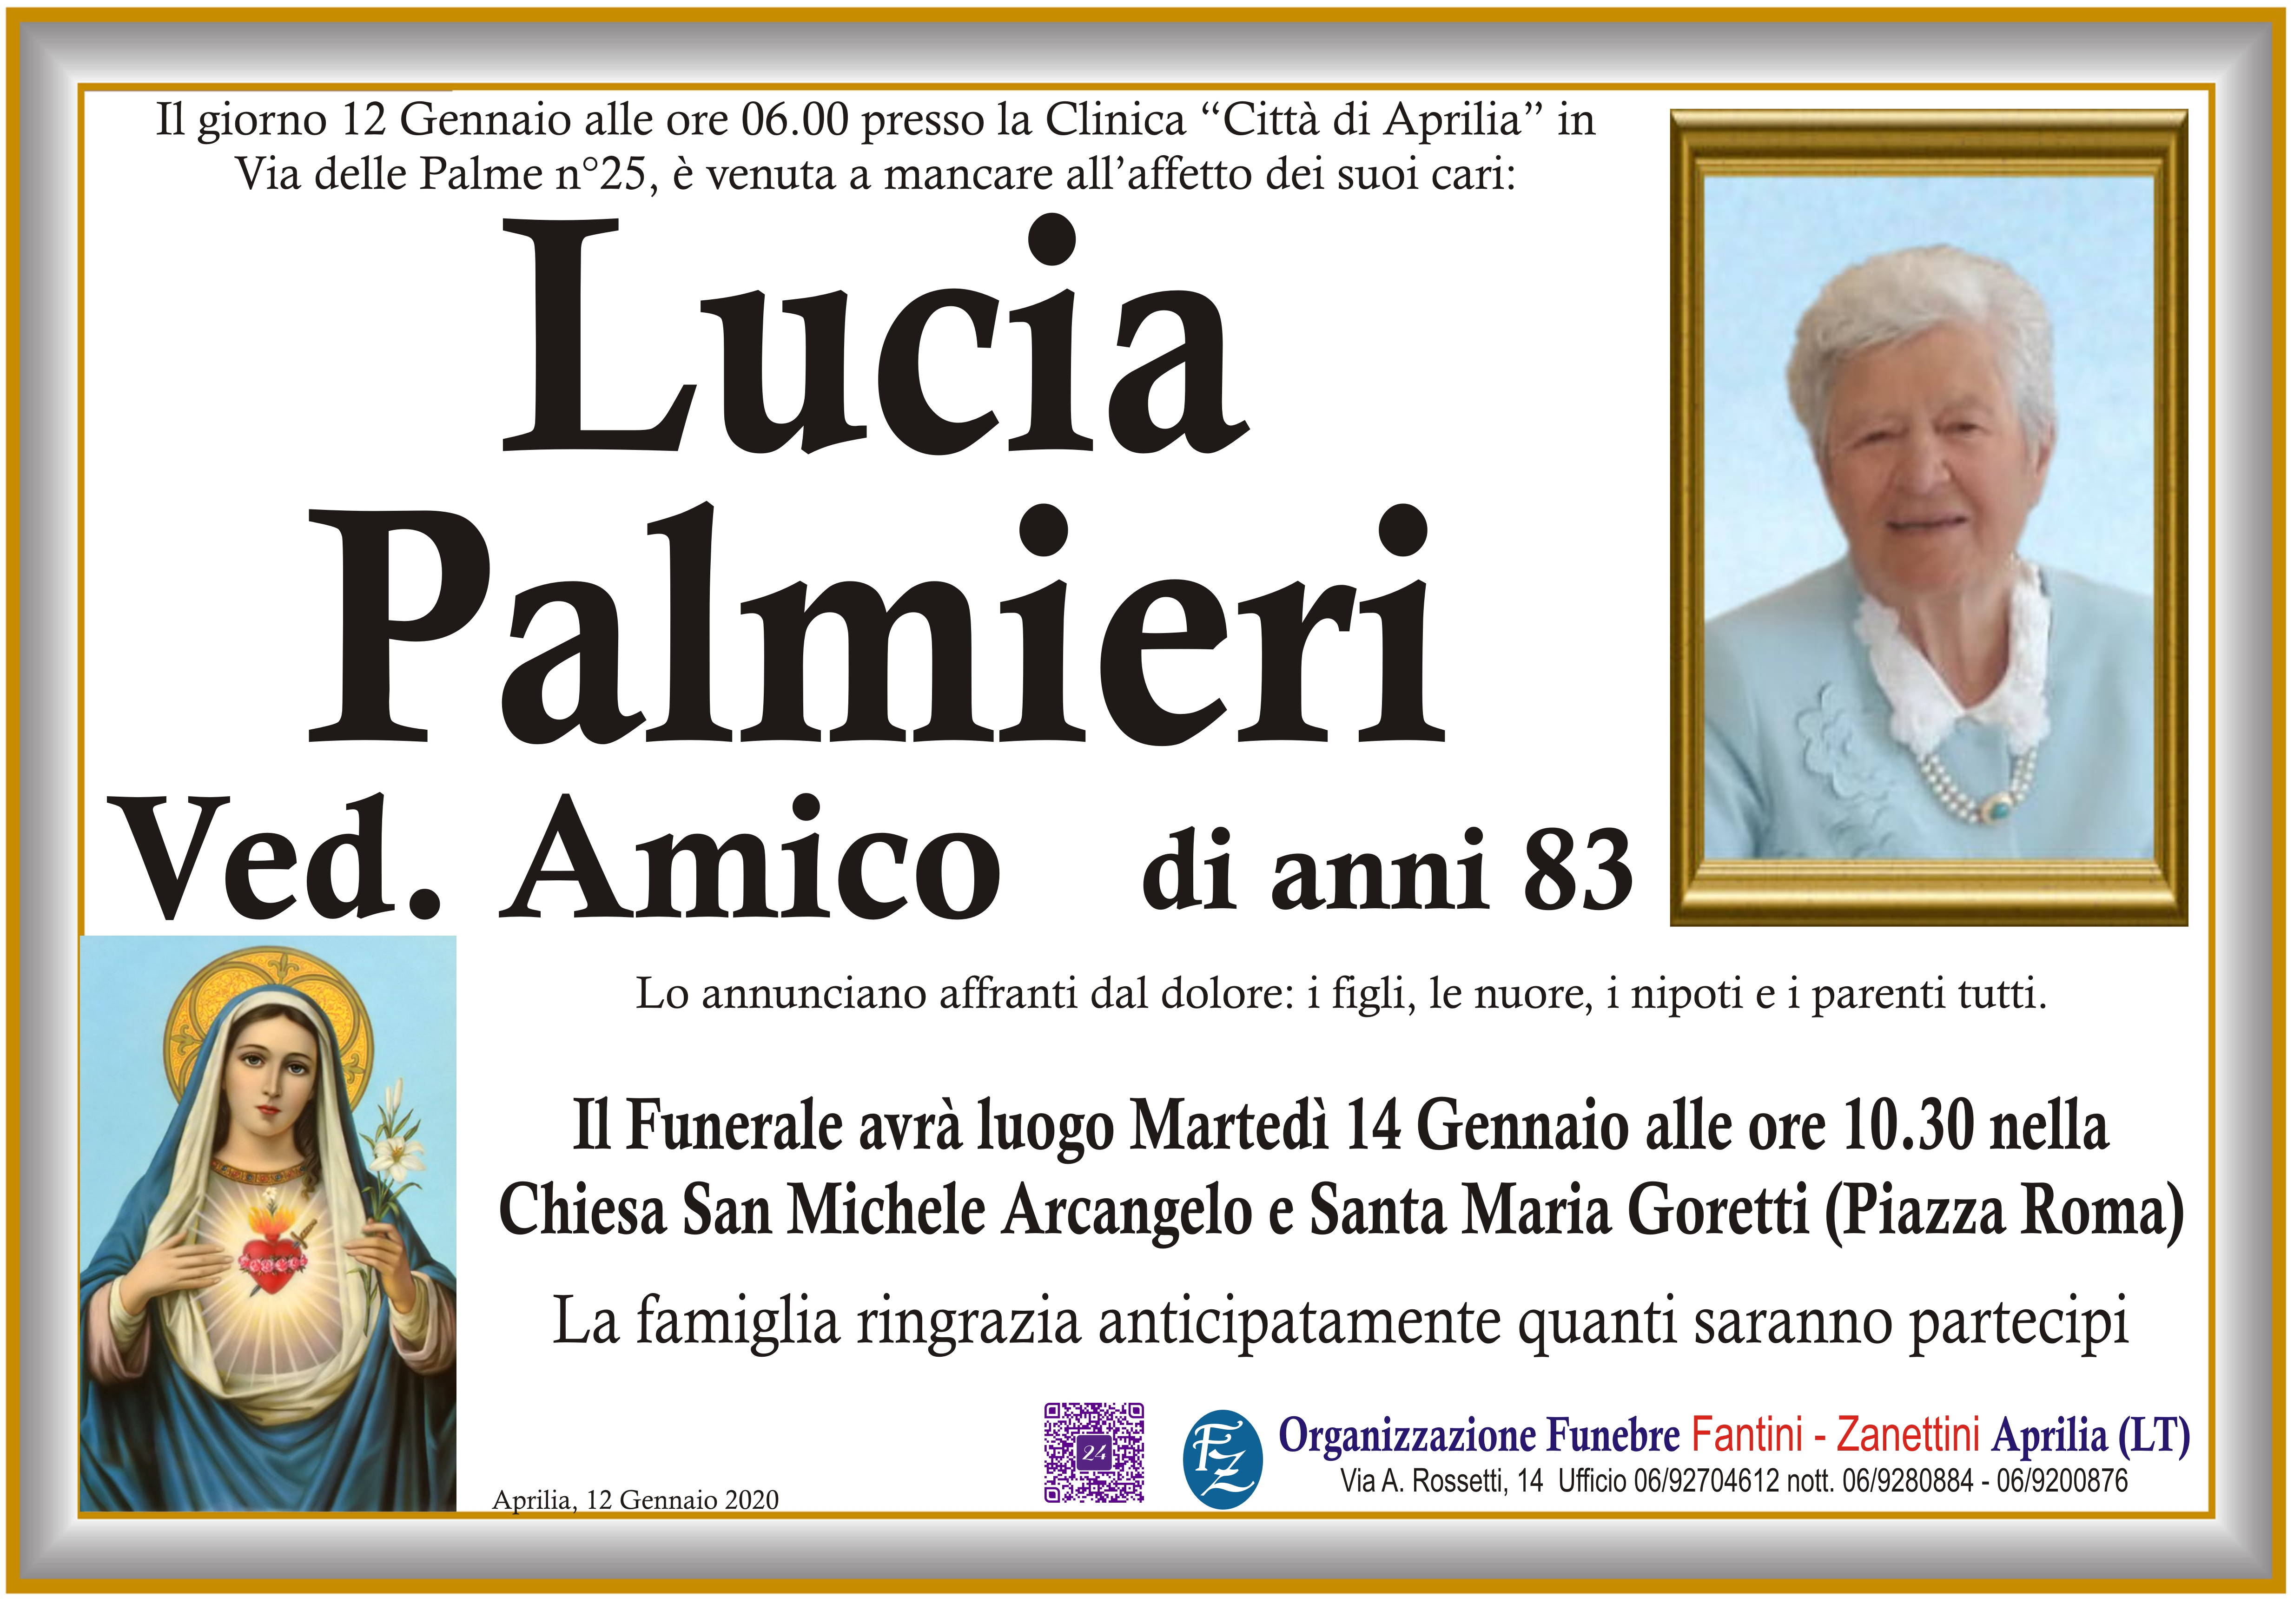 Lucia Palmieri